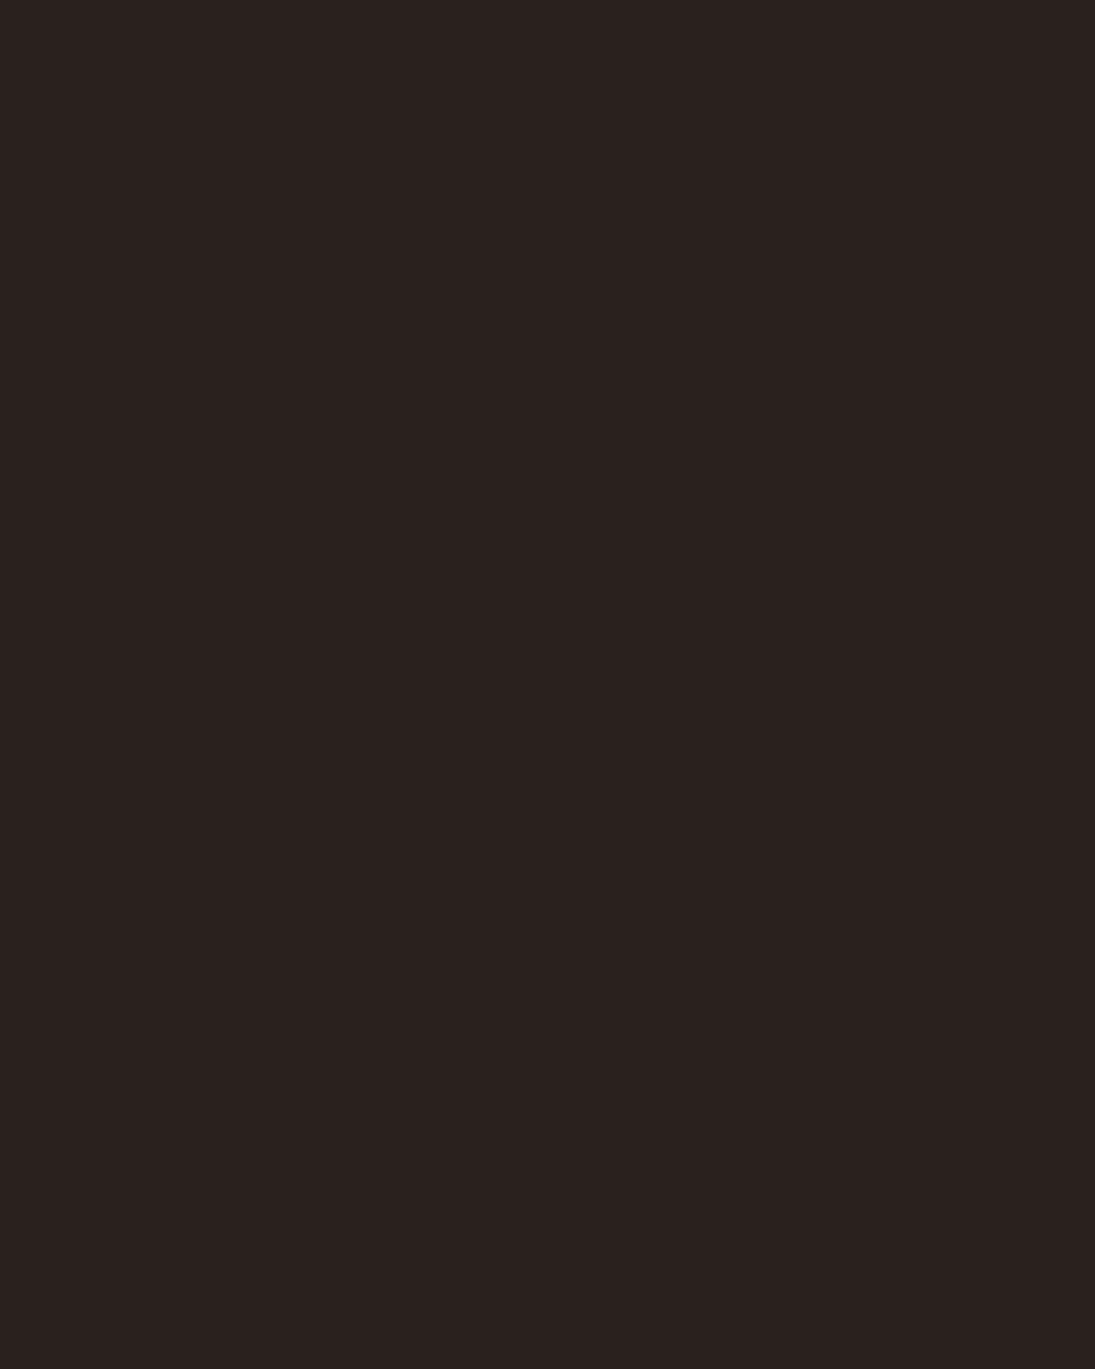 Р.Д. Нохоров. Кольцо и браслет. Бурятия, конец 1970-х годов. Выставка «Ювелирное искусство Бурятии», Государственный музей искусства народов Востока, Москва